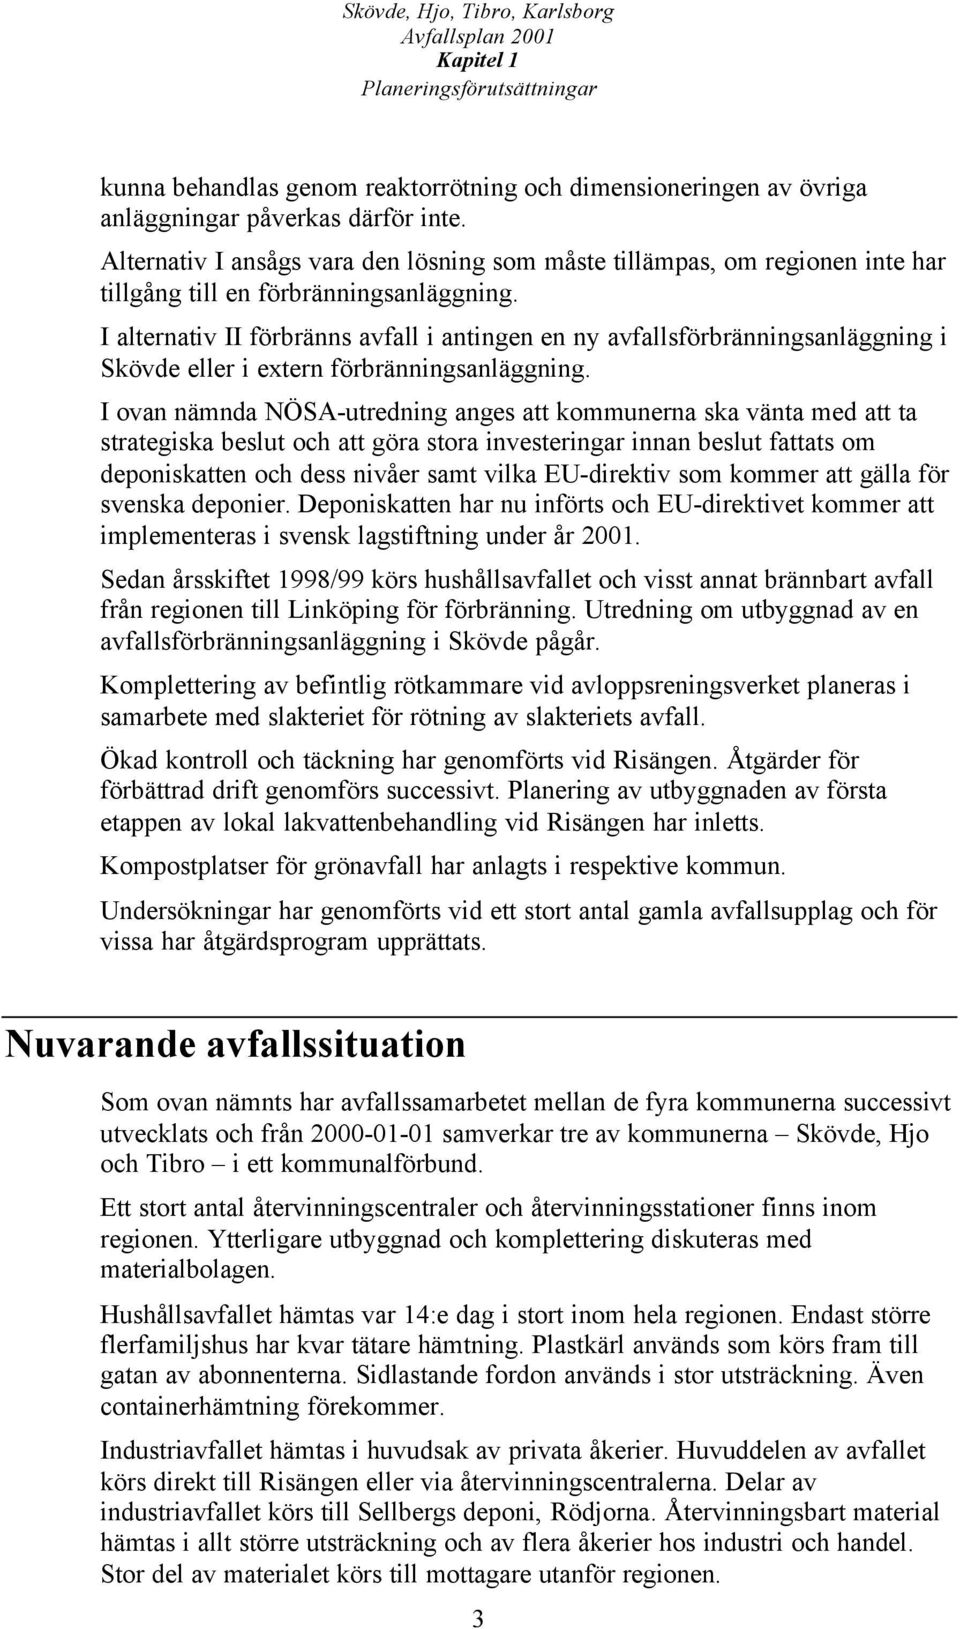 I alternativ II förbränns avfall i antingen en ny avfallsförbränningsanläggning i Skövde eller i extern förbränningsanläggning.